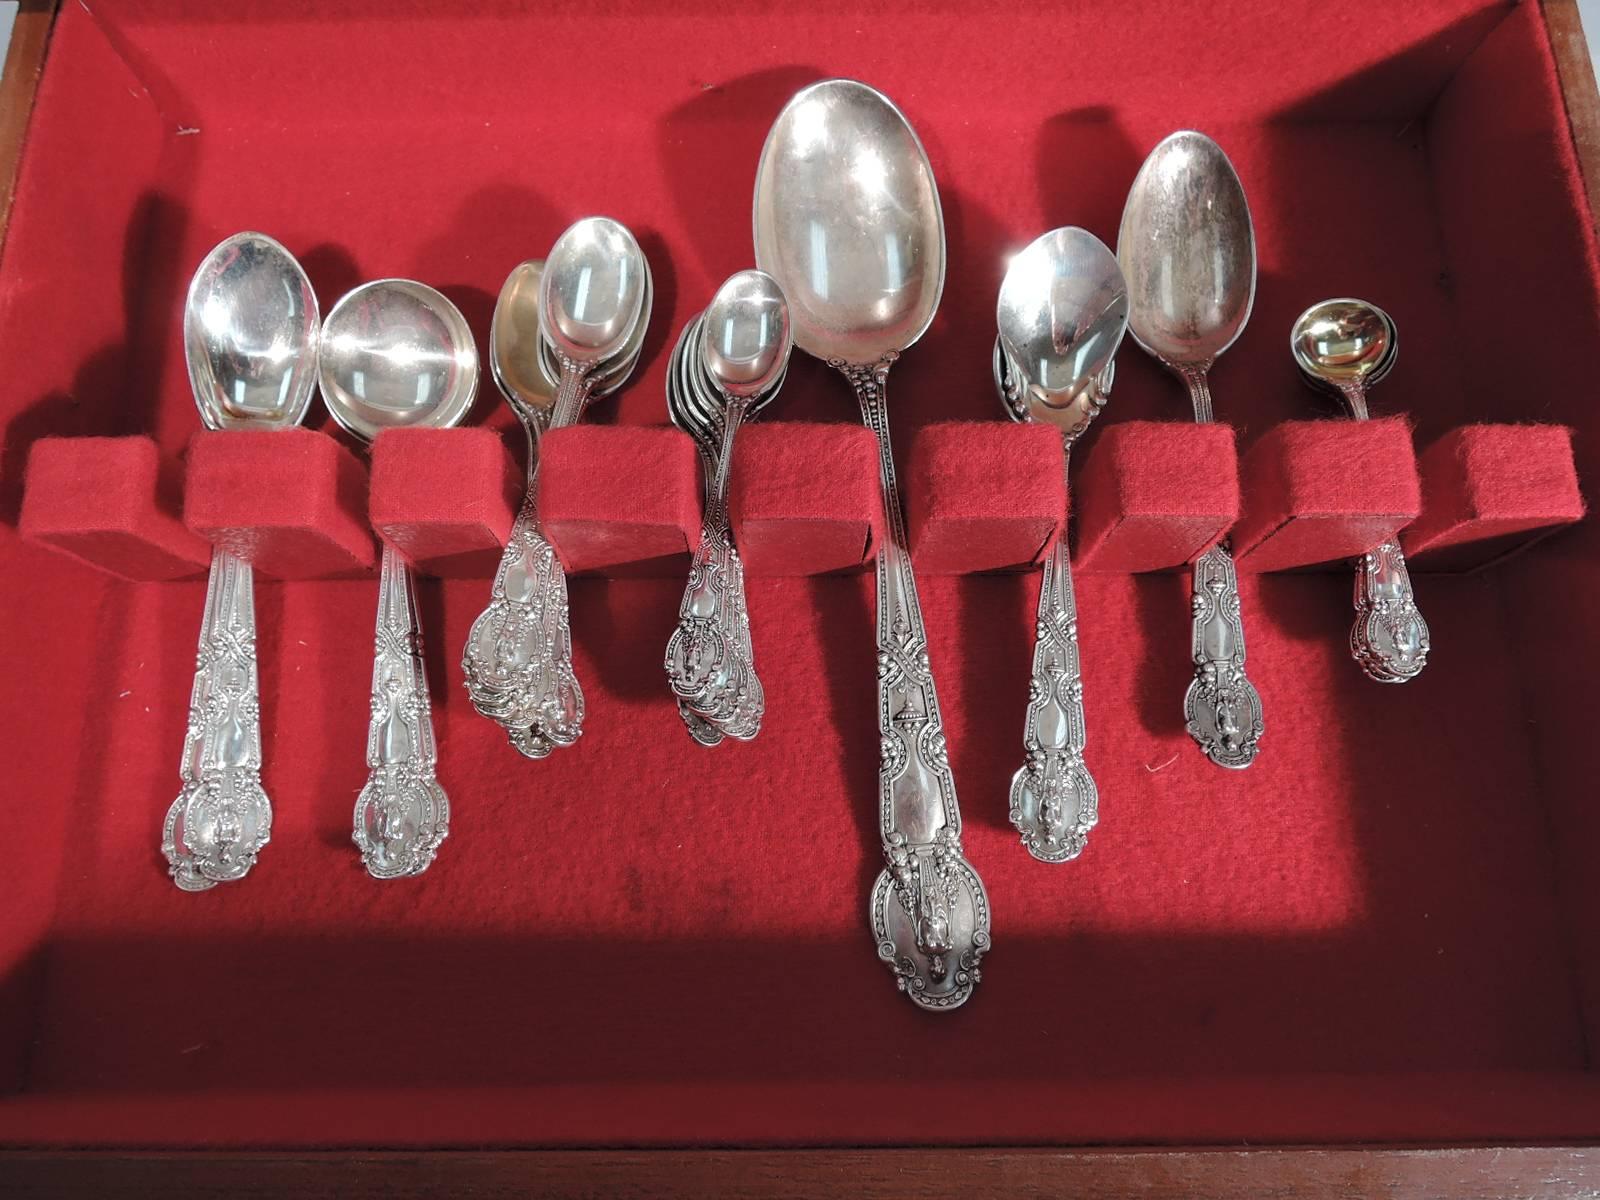 Renaissance Revival Group of Antique Tiffany Renaissance Sterling Silver Flatware Pieces